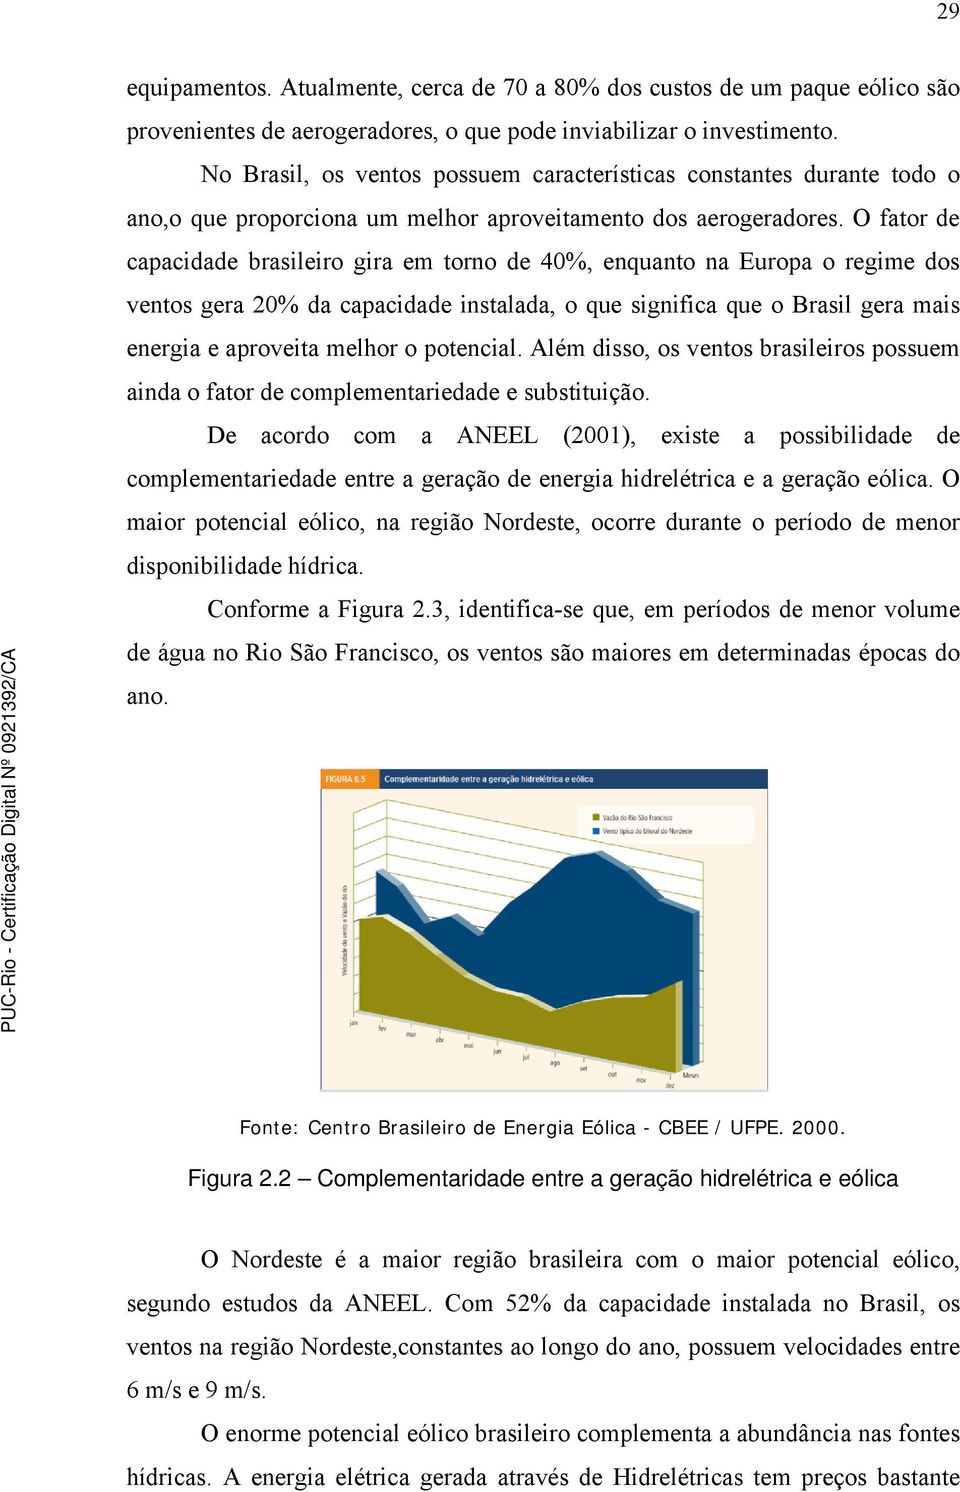 O fator de capacidade brasileiro gira em torno de 40%, enquanto na Europa o regime dos ventos gera 20% da capacidade instalada, o que significa que o Brasil gera mais energia e aproveita melhor o